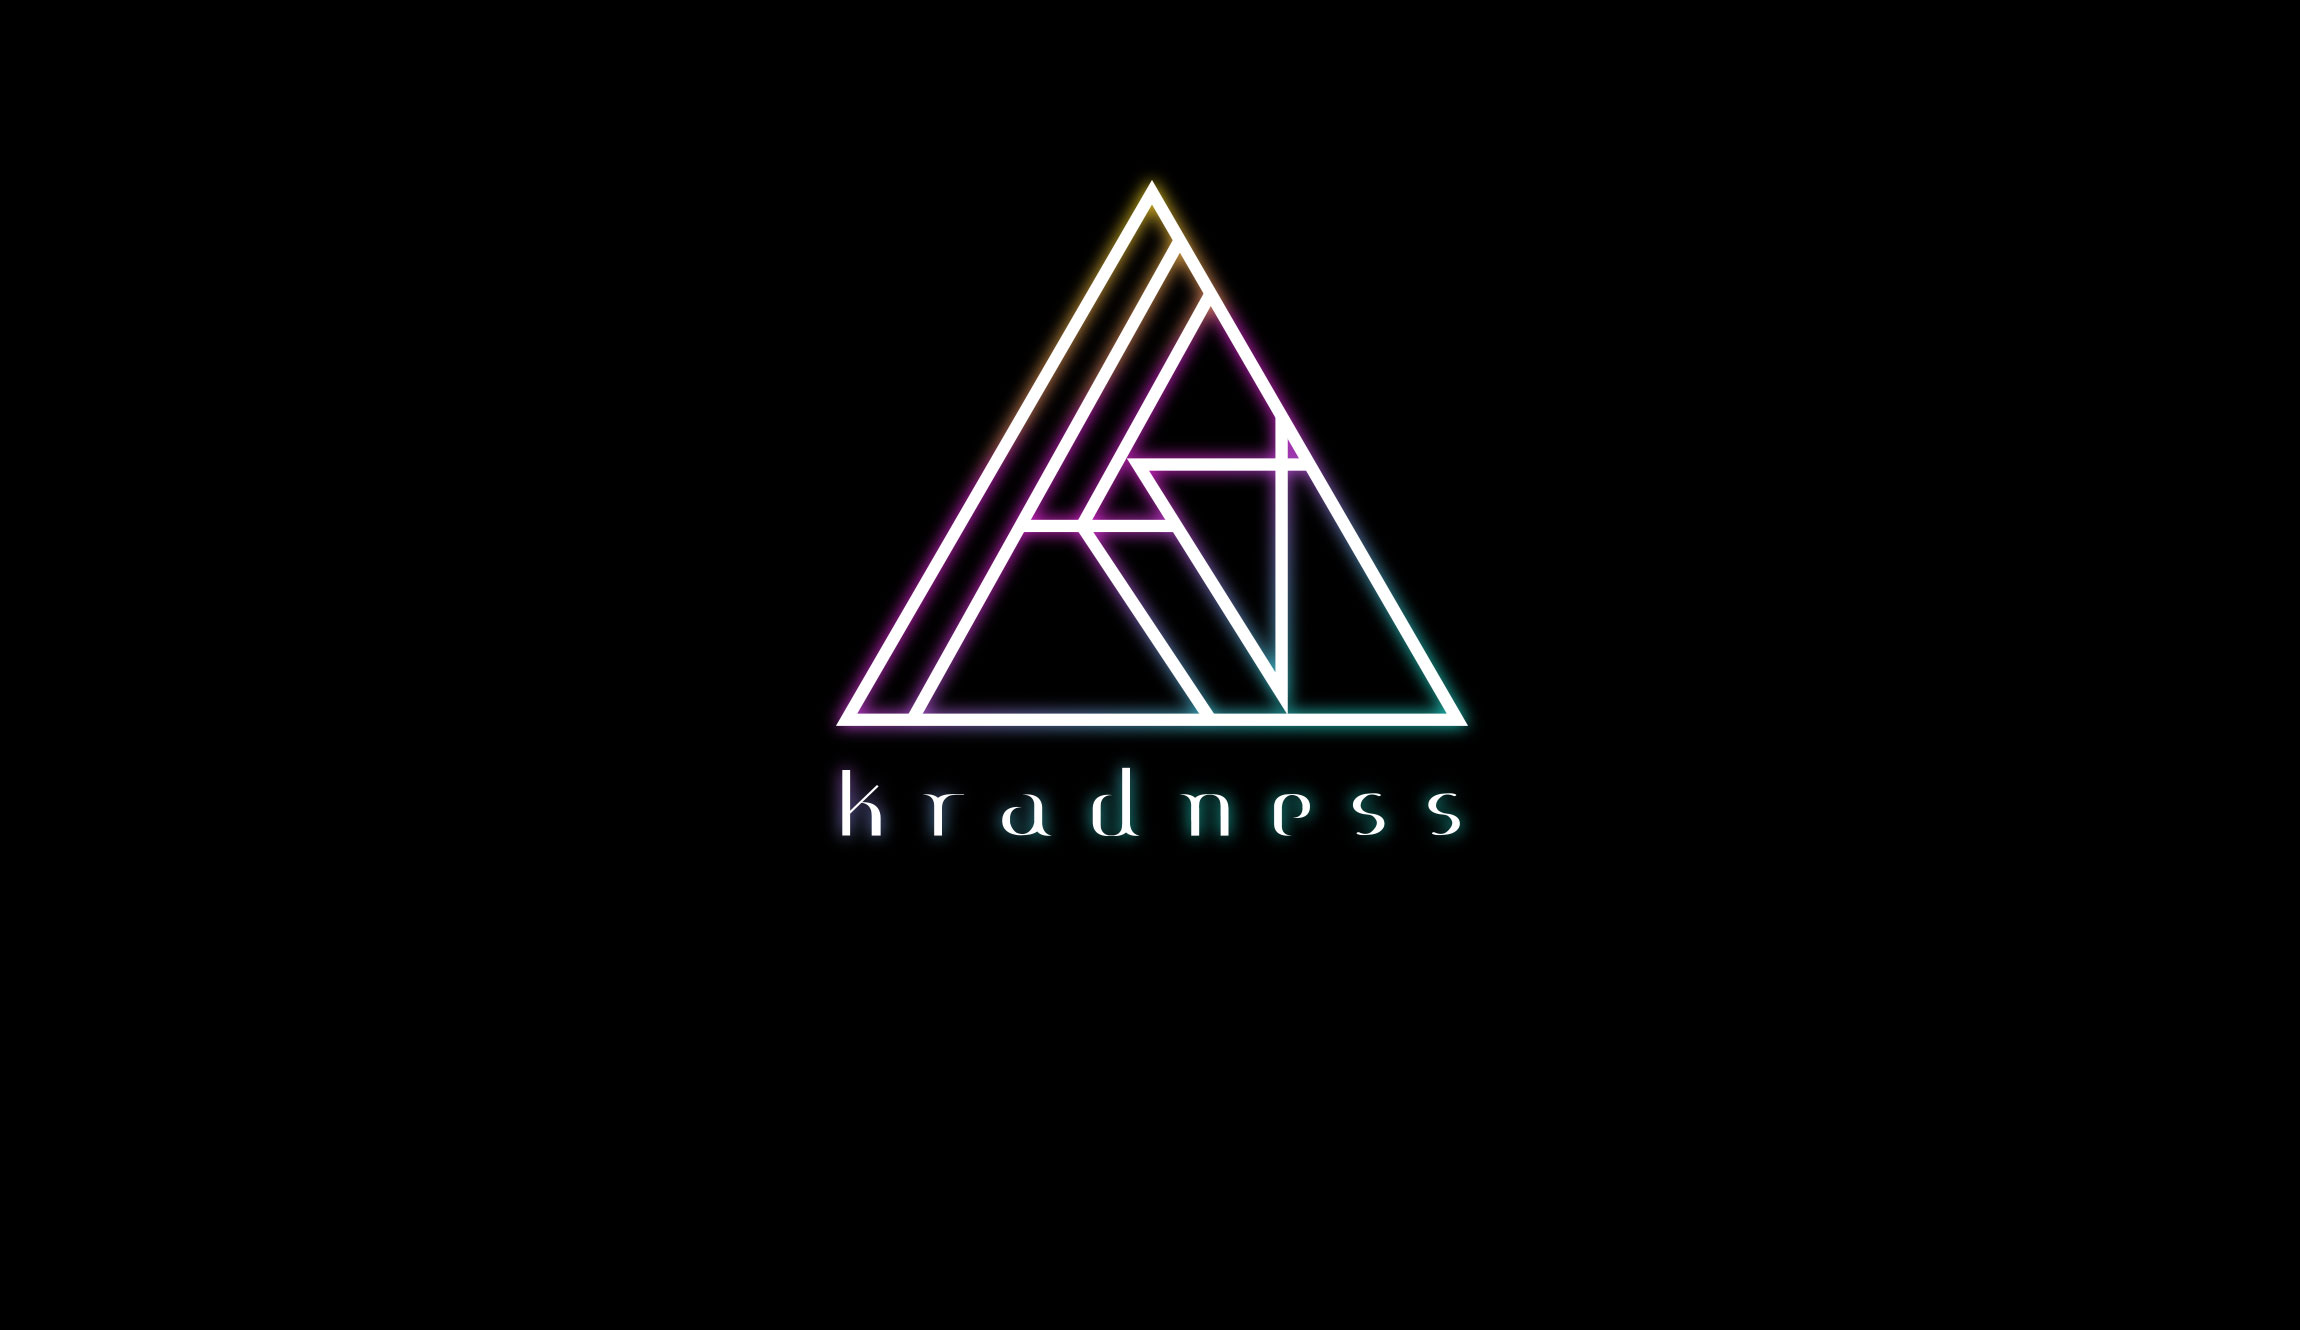 Kradness Official Website